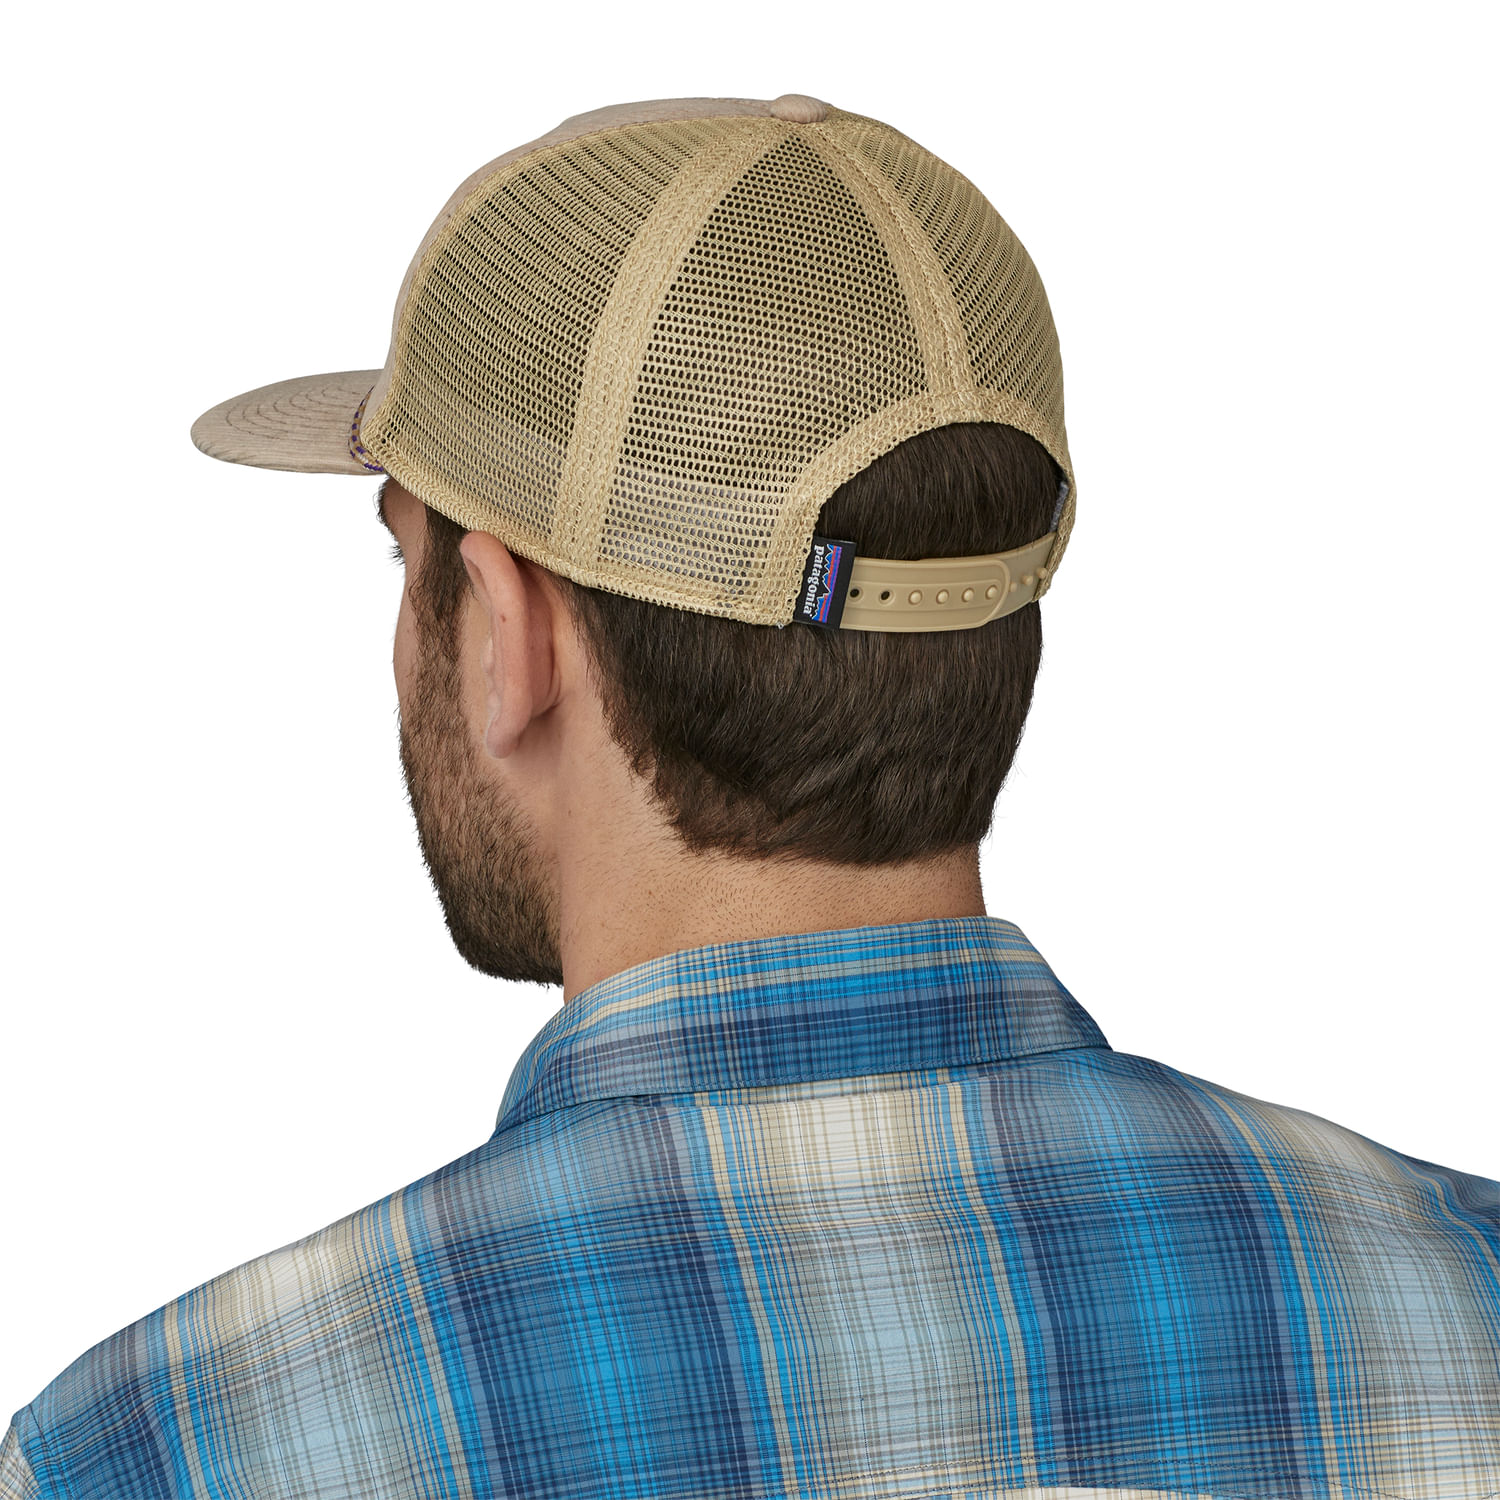 Hurley Men's Cap - Renegade Snap Back Trucker Hat